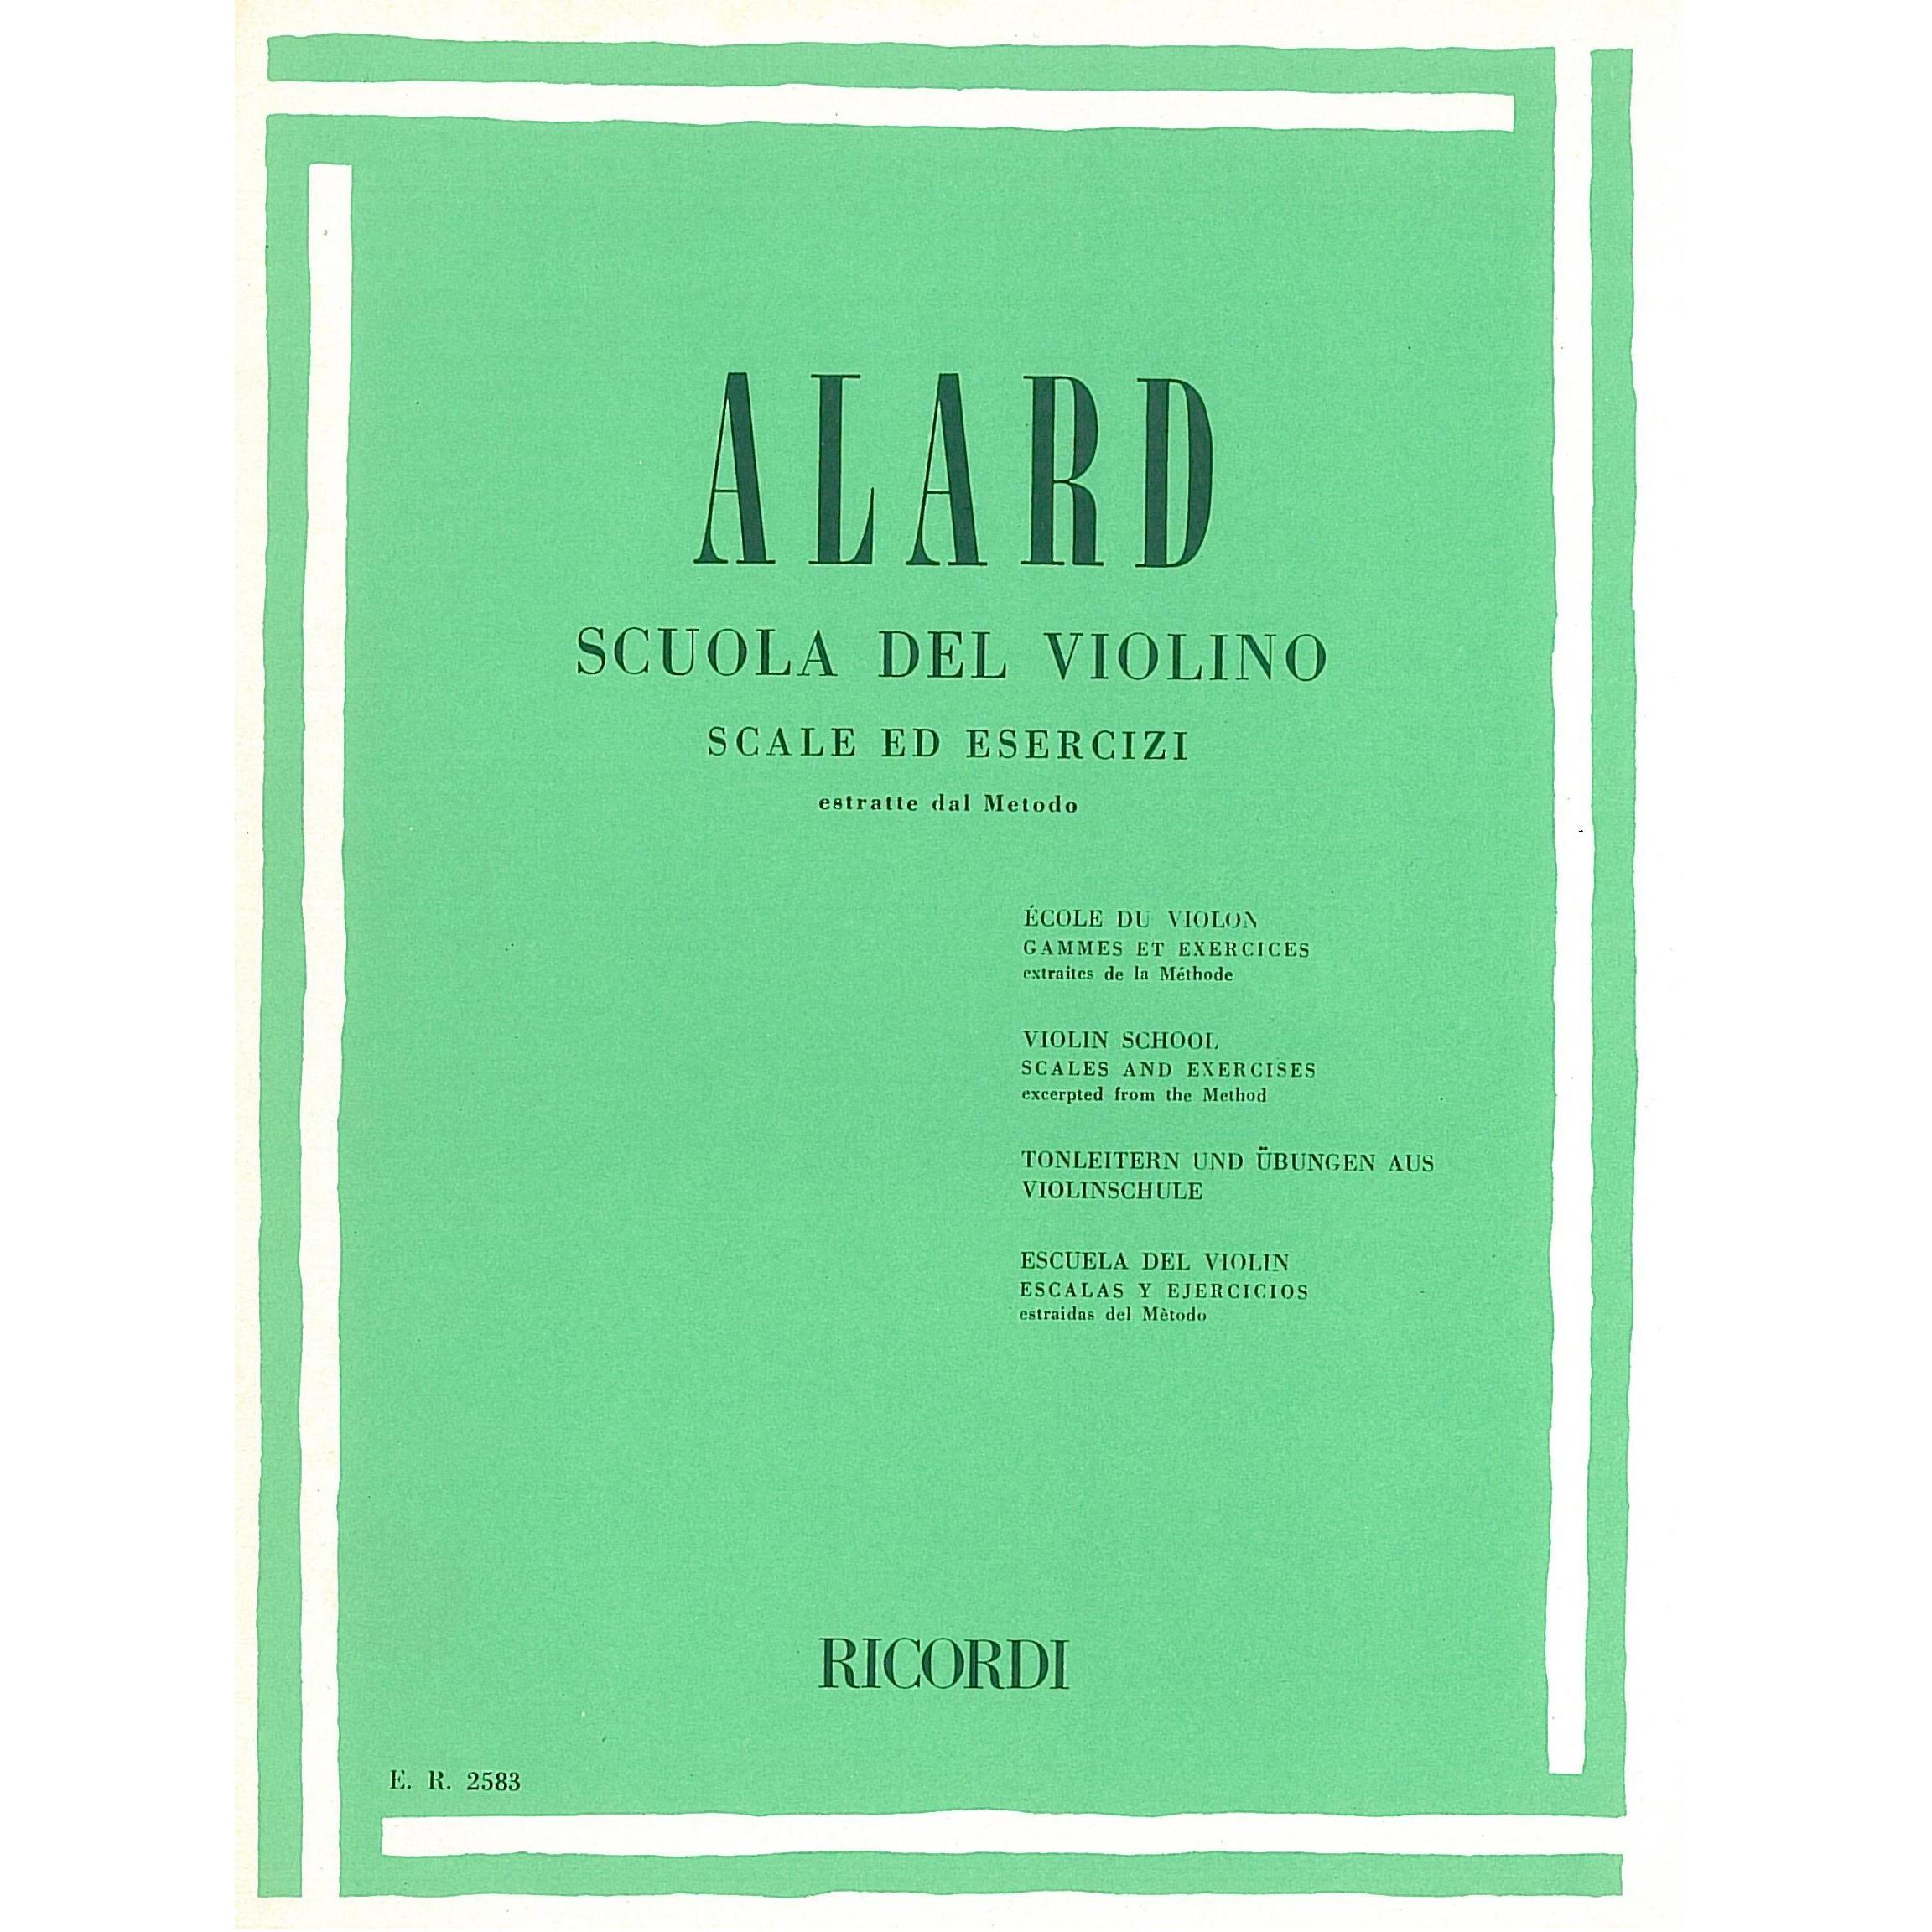 Alard Scuola del violino Scale ed esercizi - Ricordi 